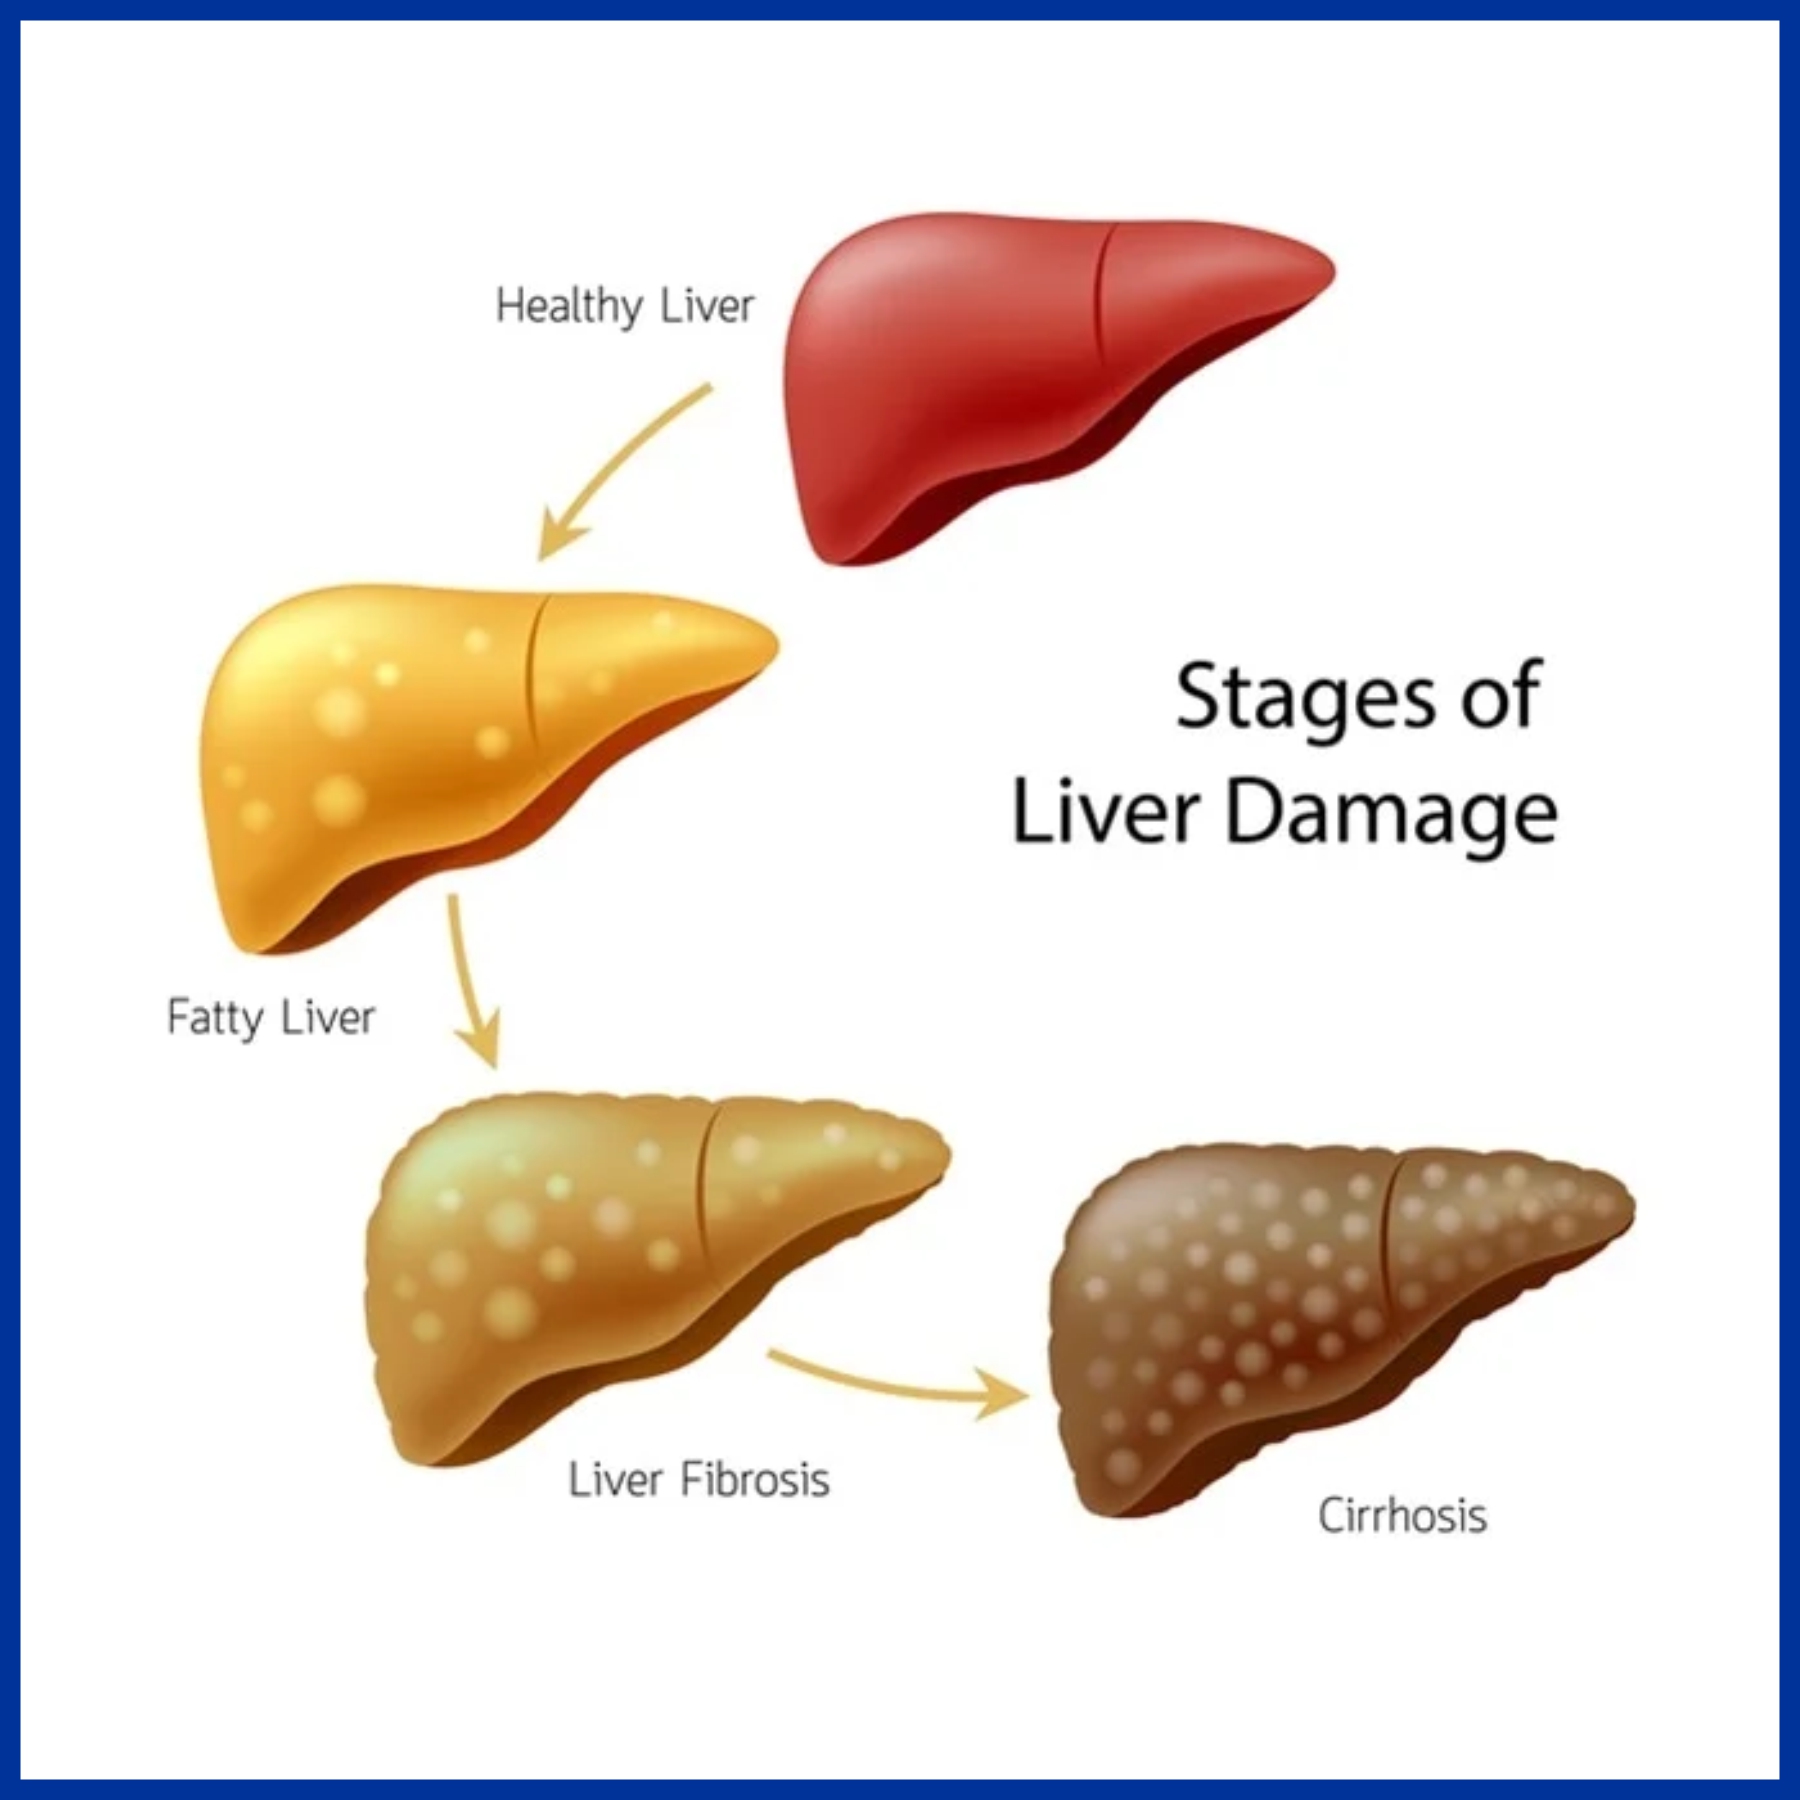 Cirrhosis of Liver